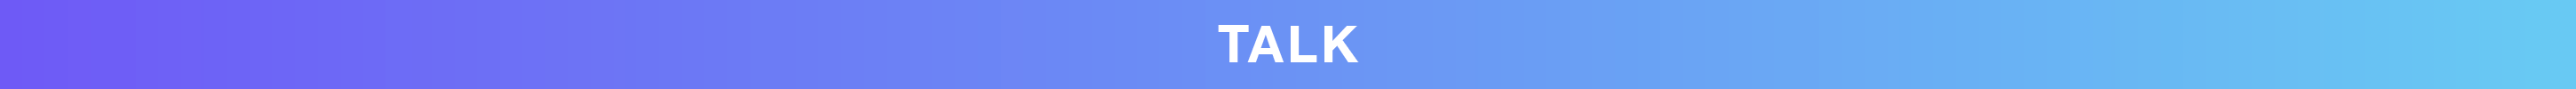 Talk banner 1